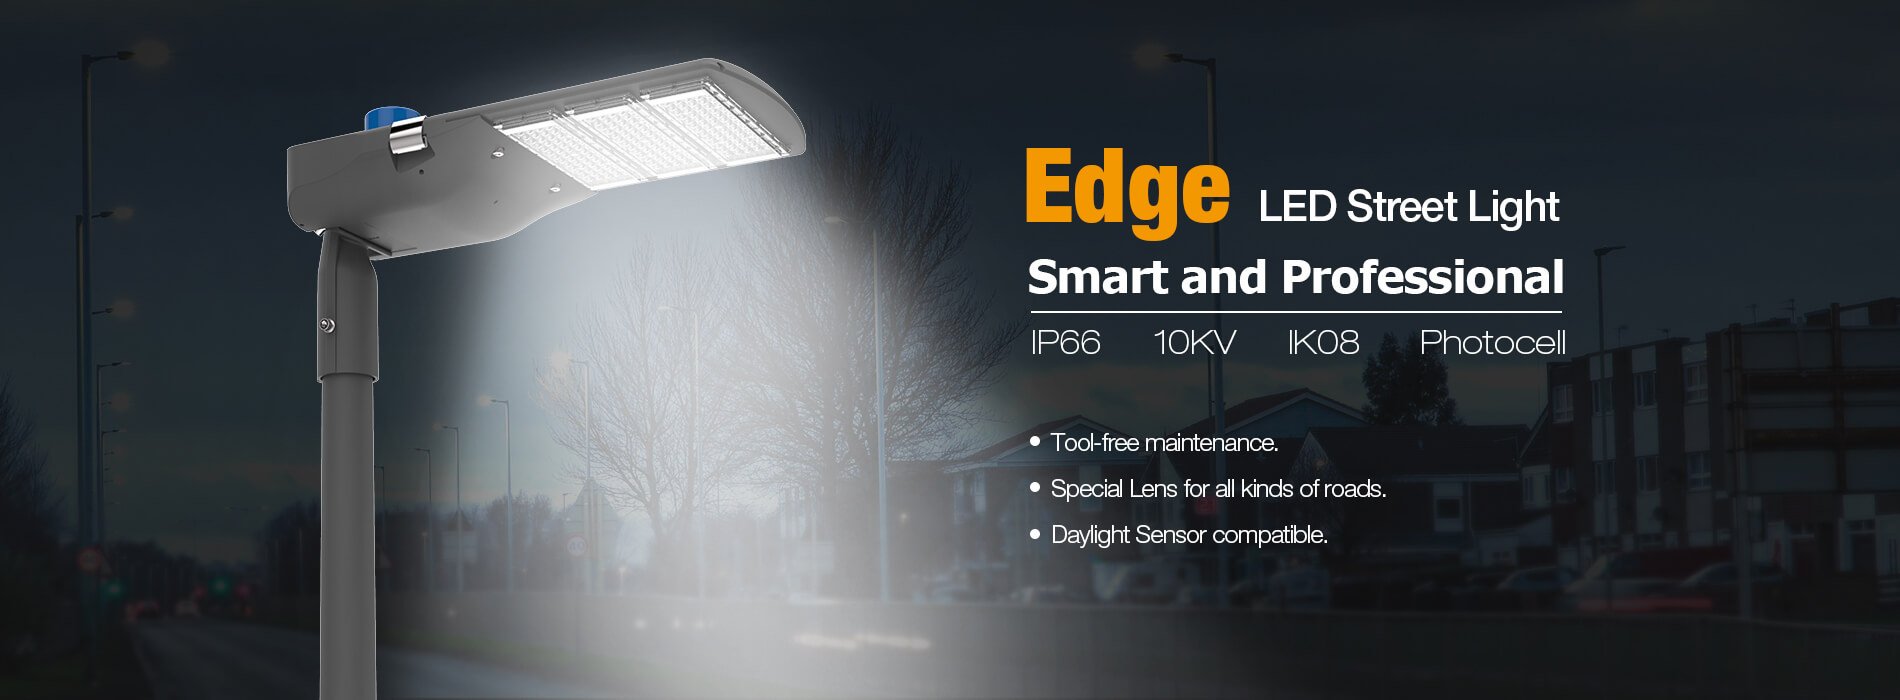 Edge LED Street Light